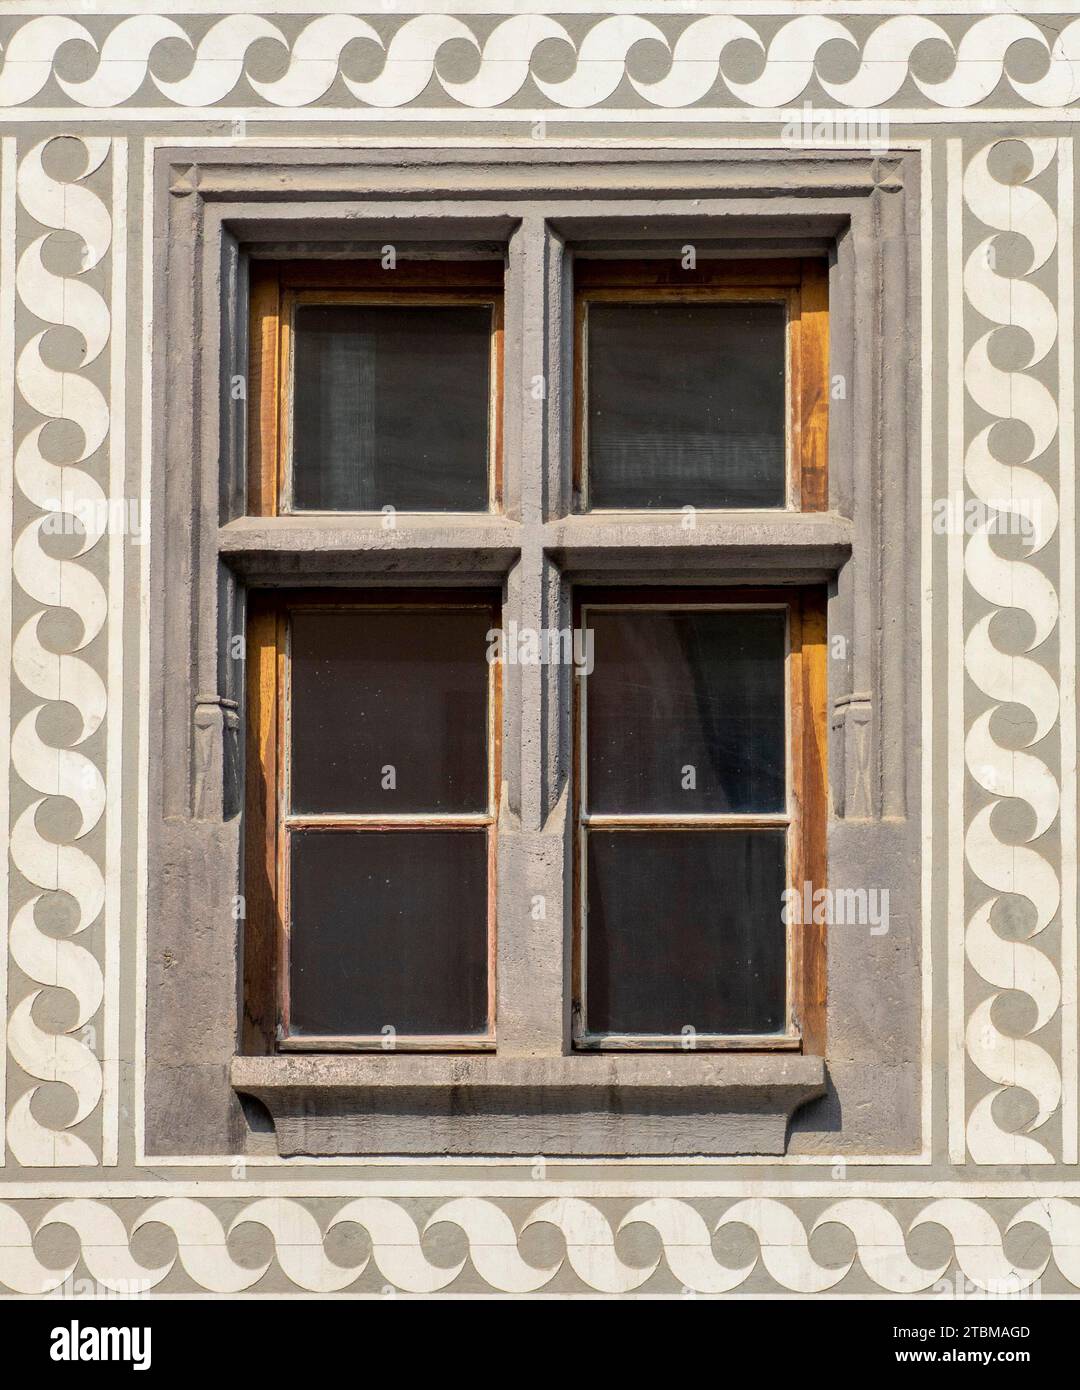 Alte Holzfenster im Vintage-Stil mit Verzierungen an der Wand. Außenansicht eines Gebäudes. Fenster im klassischen europäischen Stil in einem alten Gebäude Stockfoto